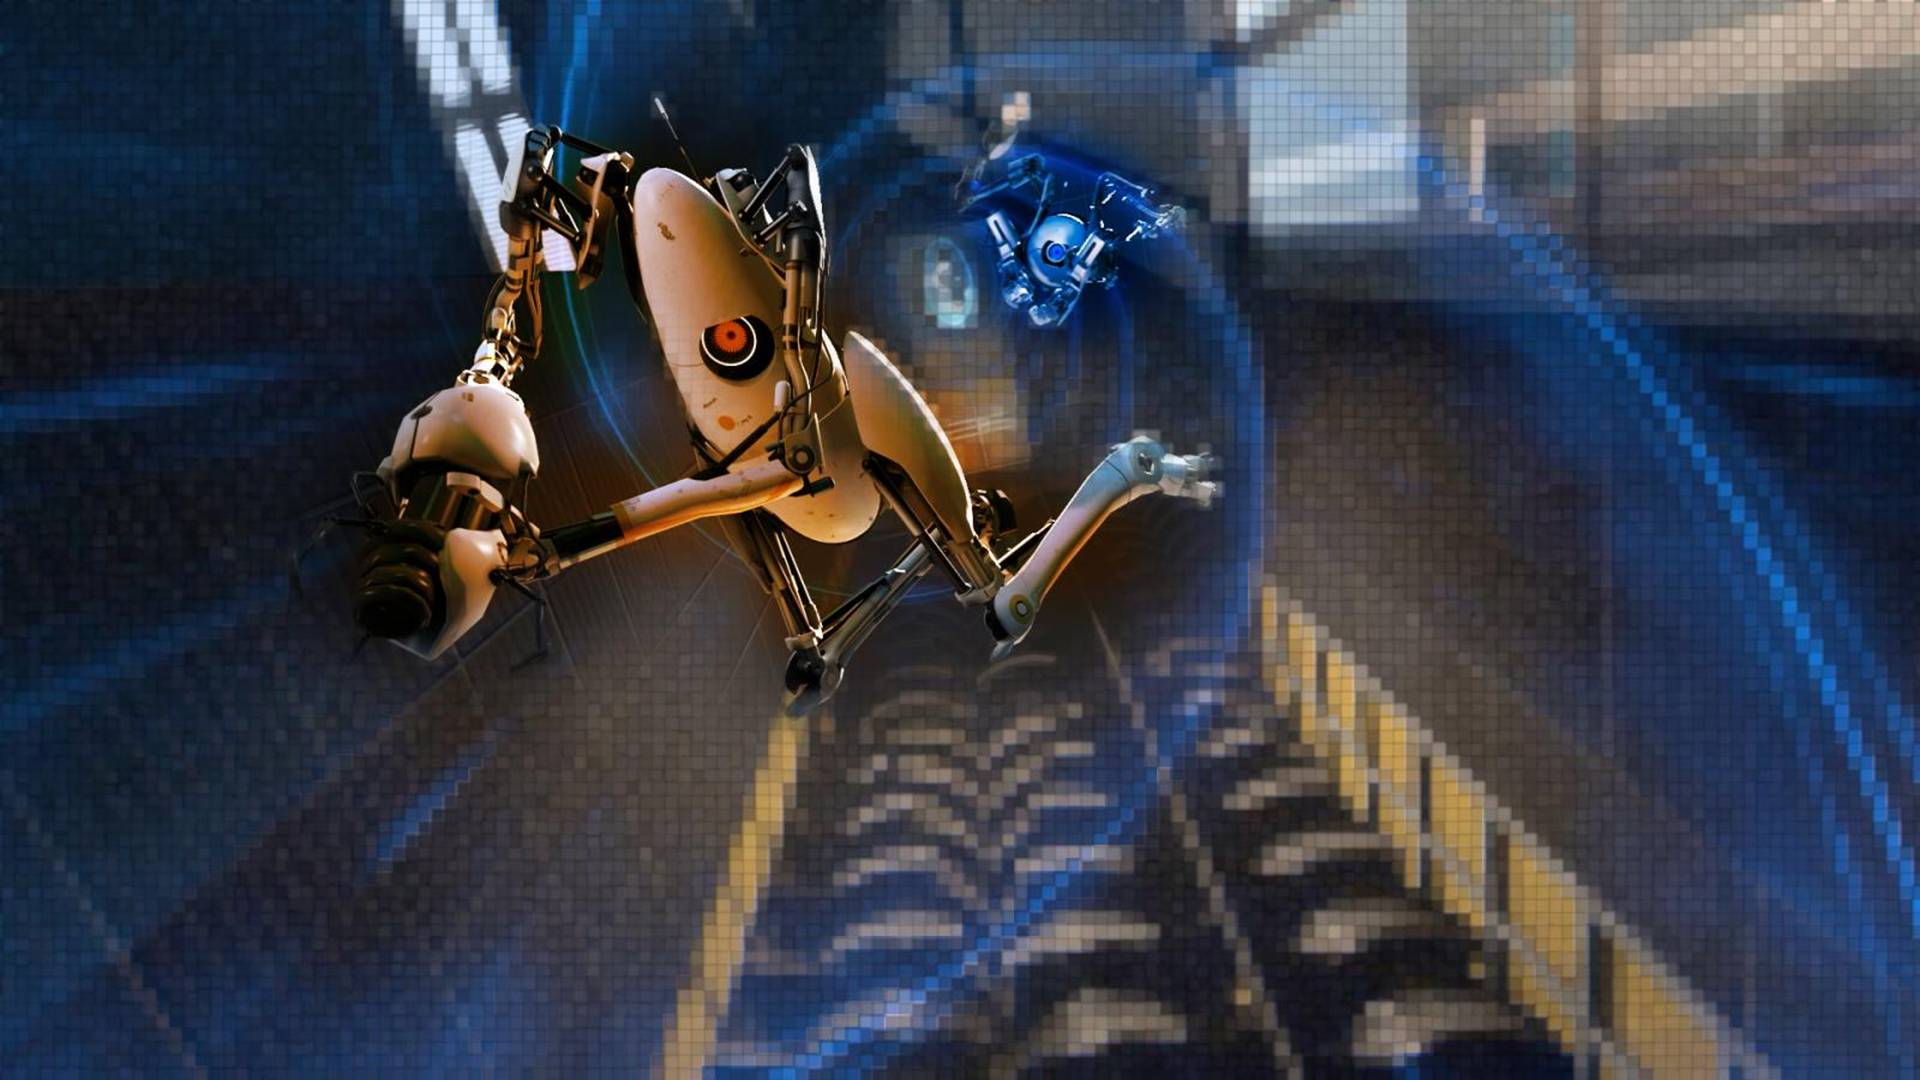 Portal 2 Wallpapers in full 1080P HD GamingBoltcom Video Game